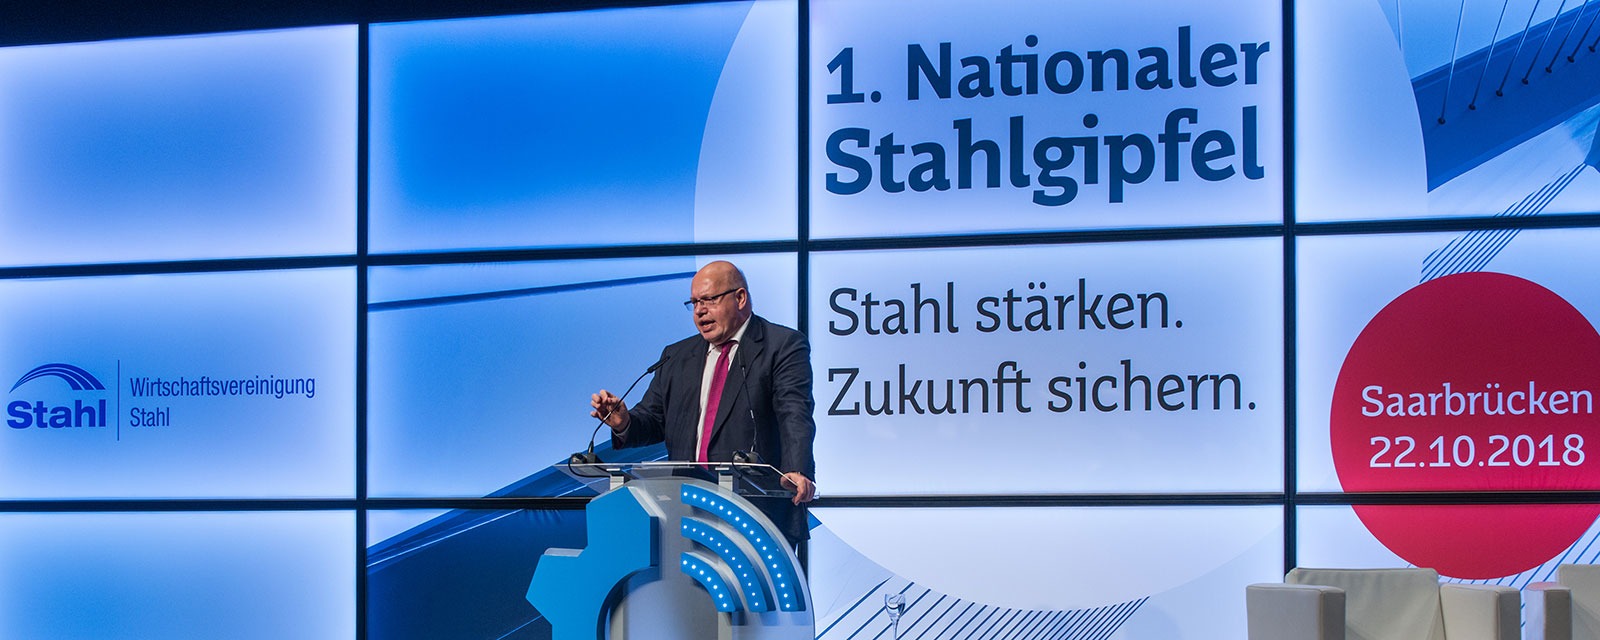 Peter Altmaier, Bundesminister für Wirtschaft und Energie